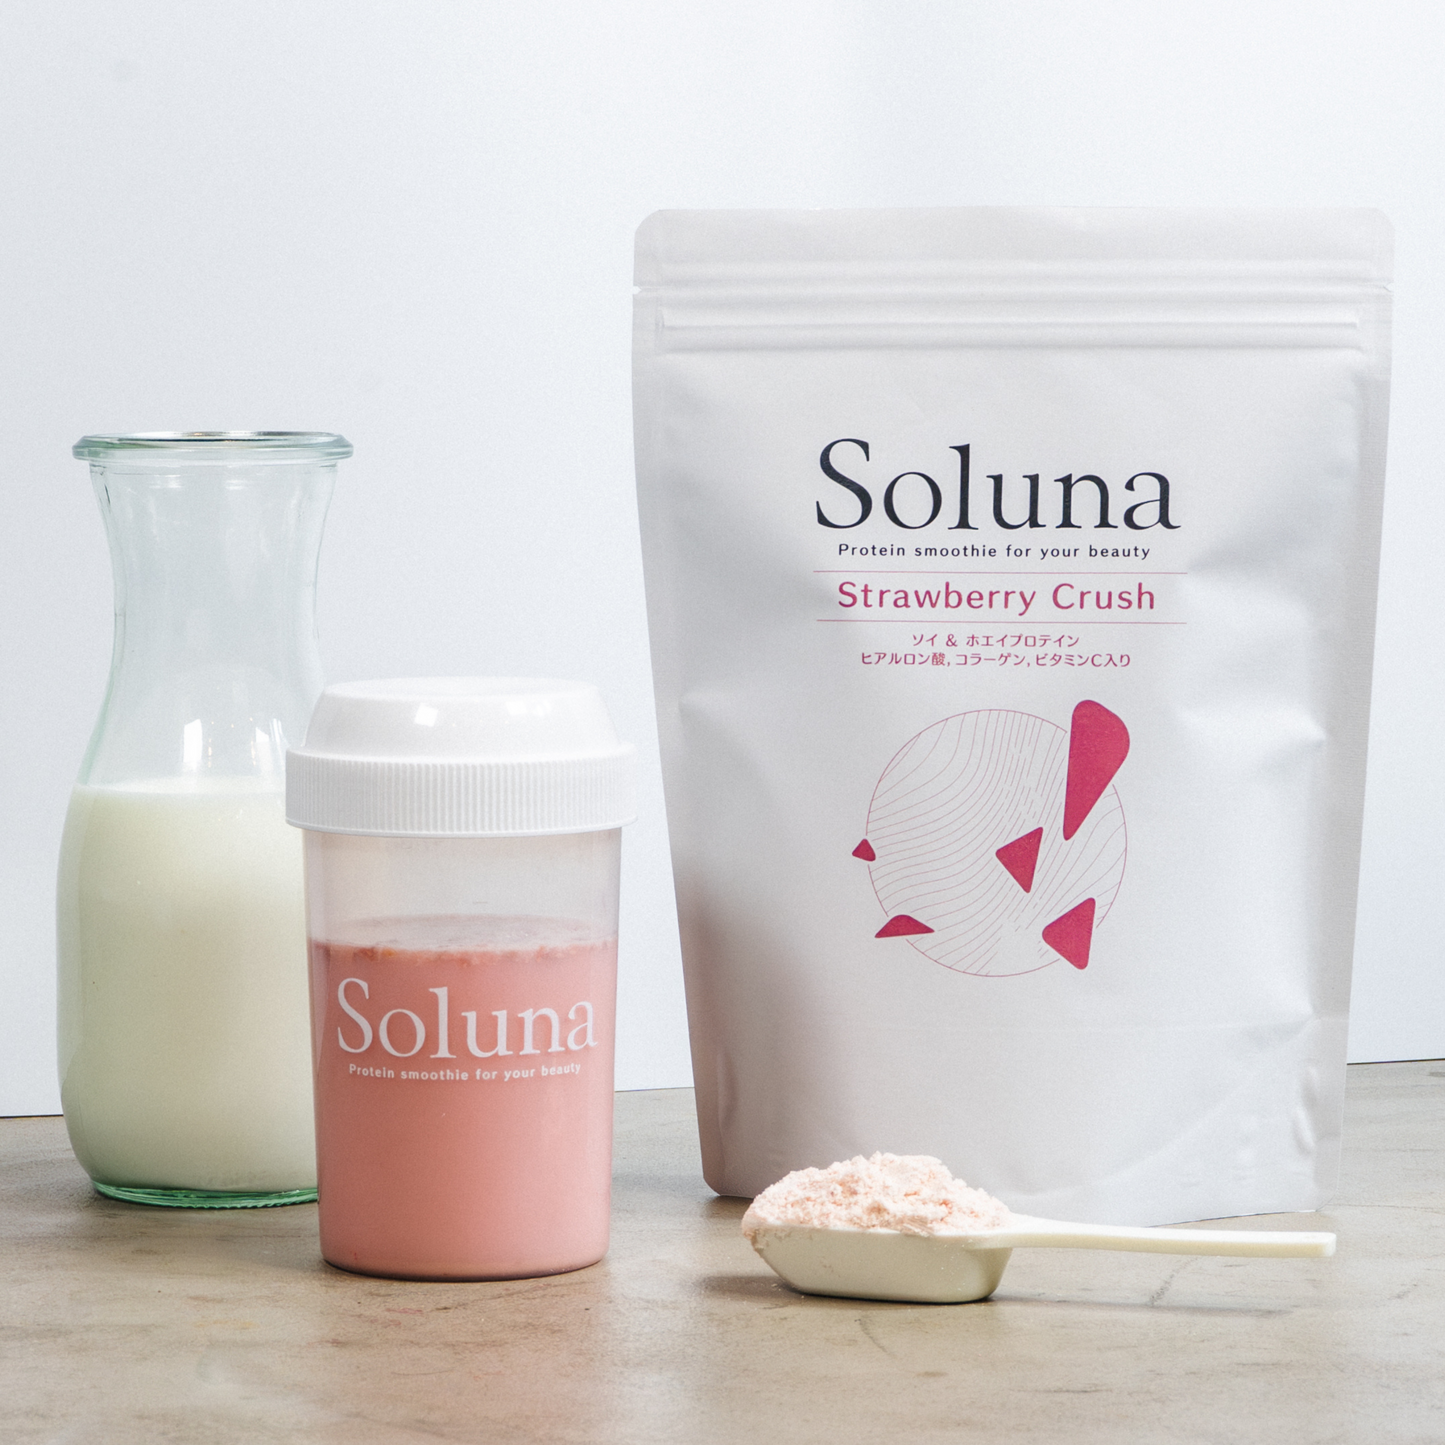 【定期購入】Soluna Protein 2袋